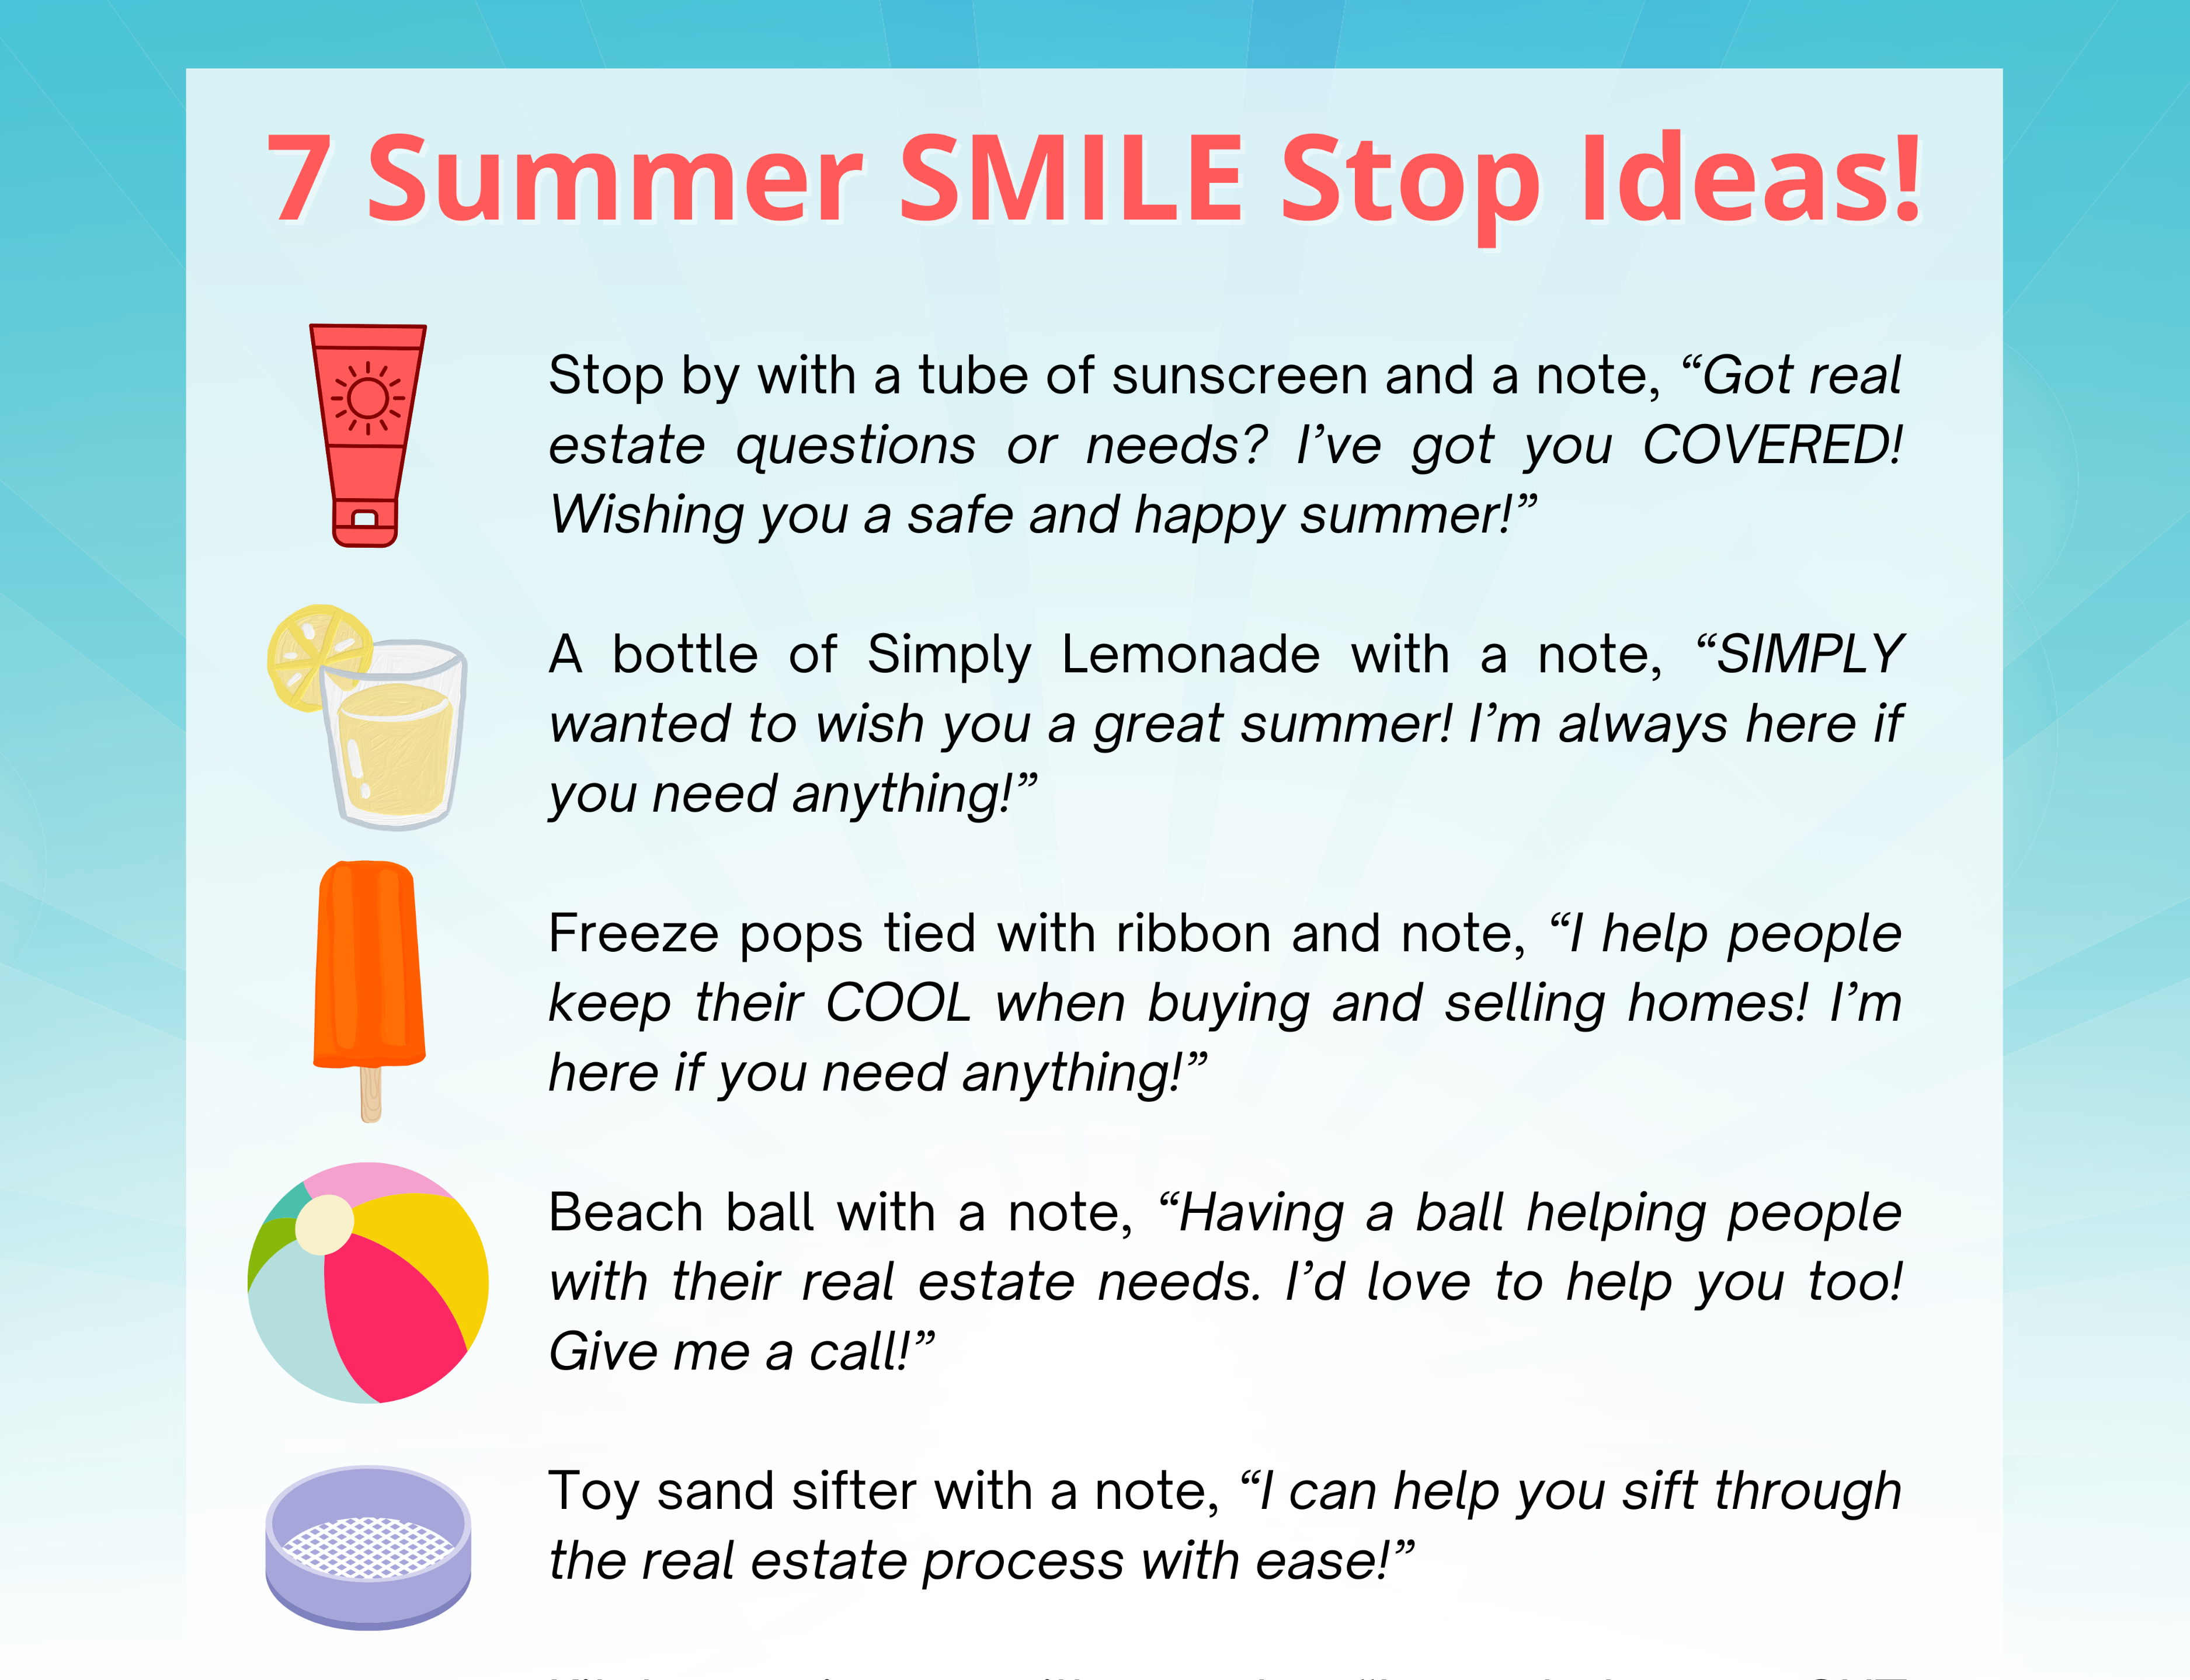 SMILE Stops – Summer